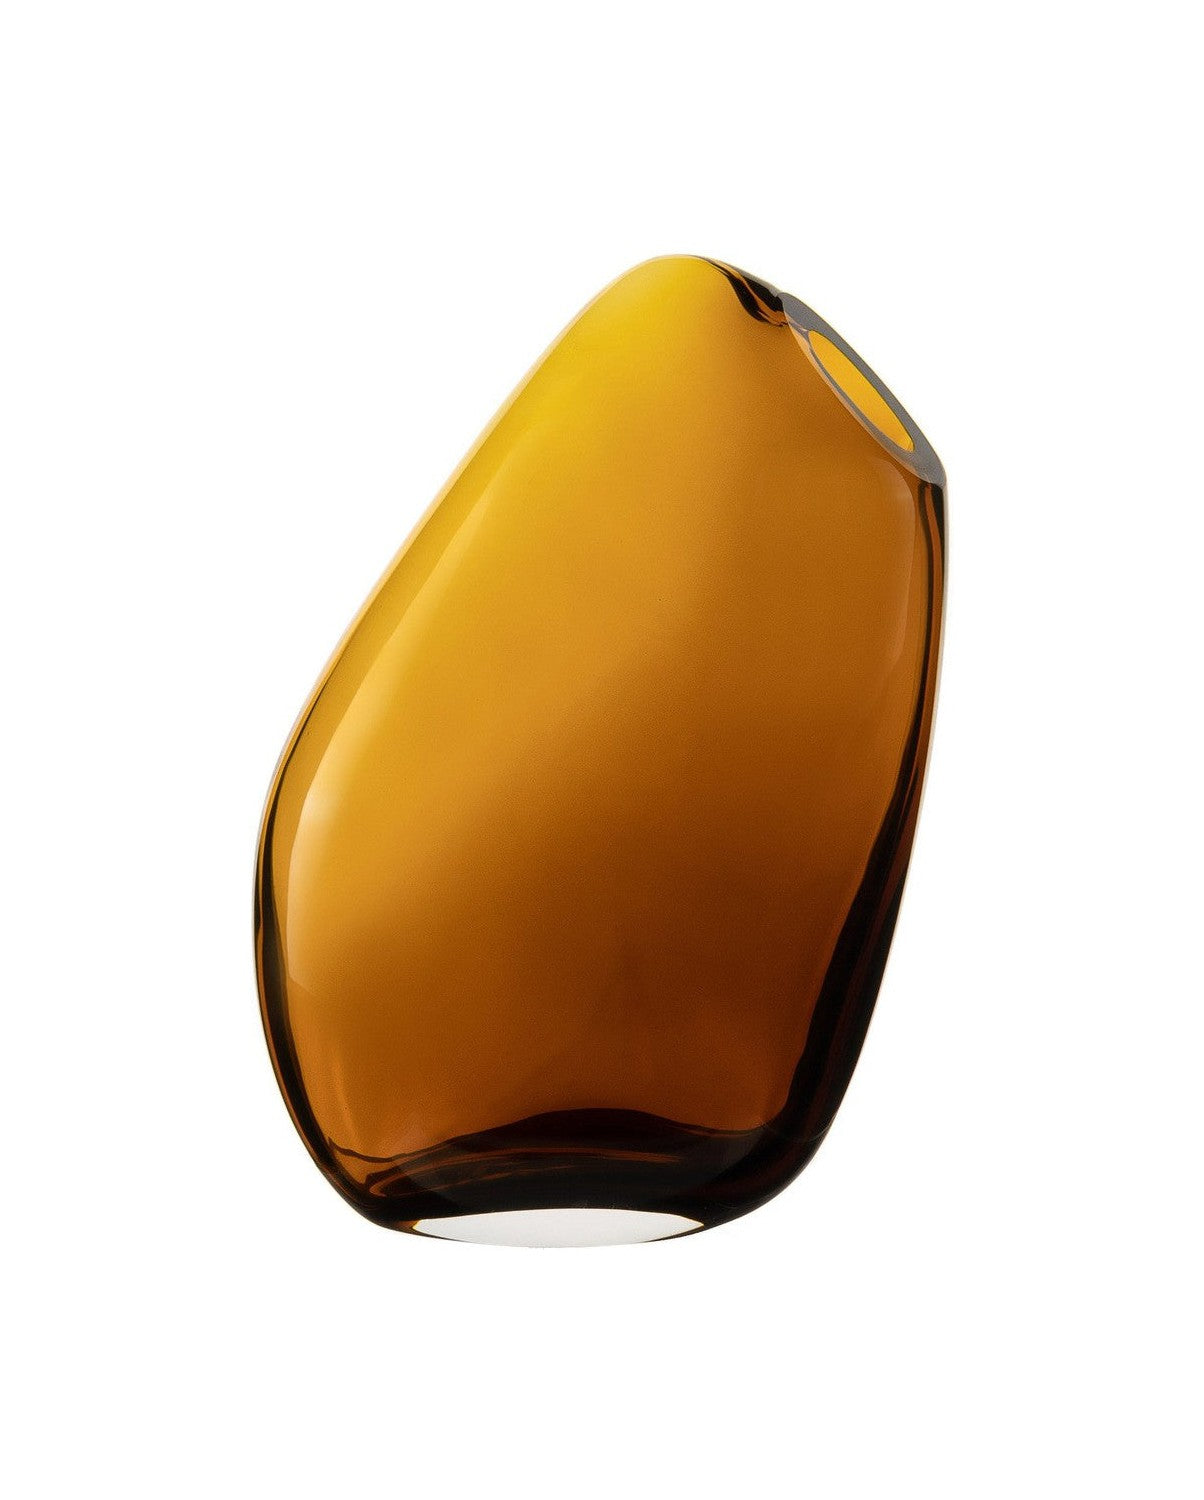 Høy moderne vase av veldig nyskapende nøktern design, Kooky30AM